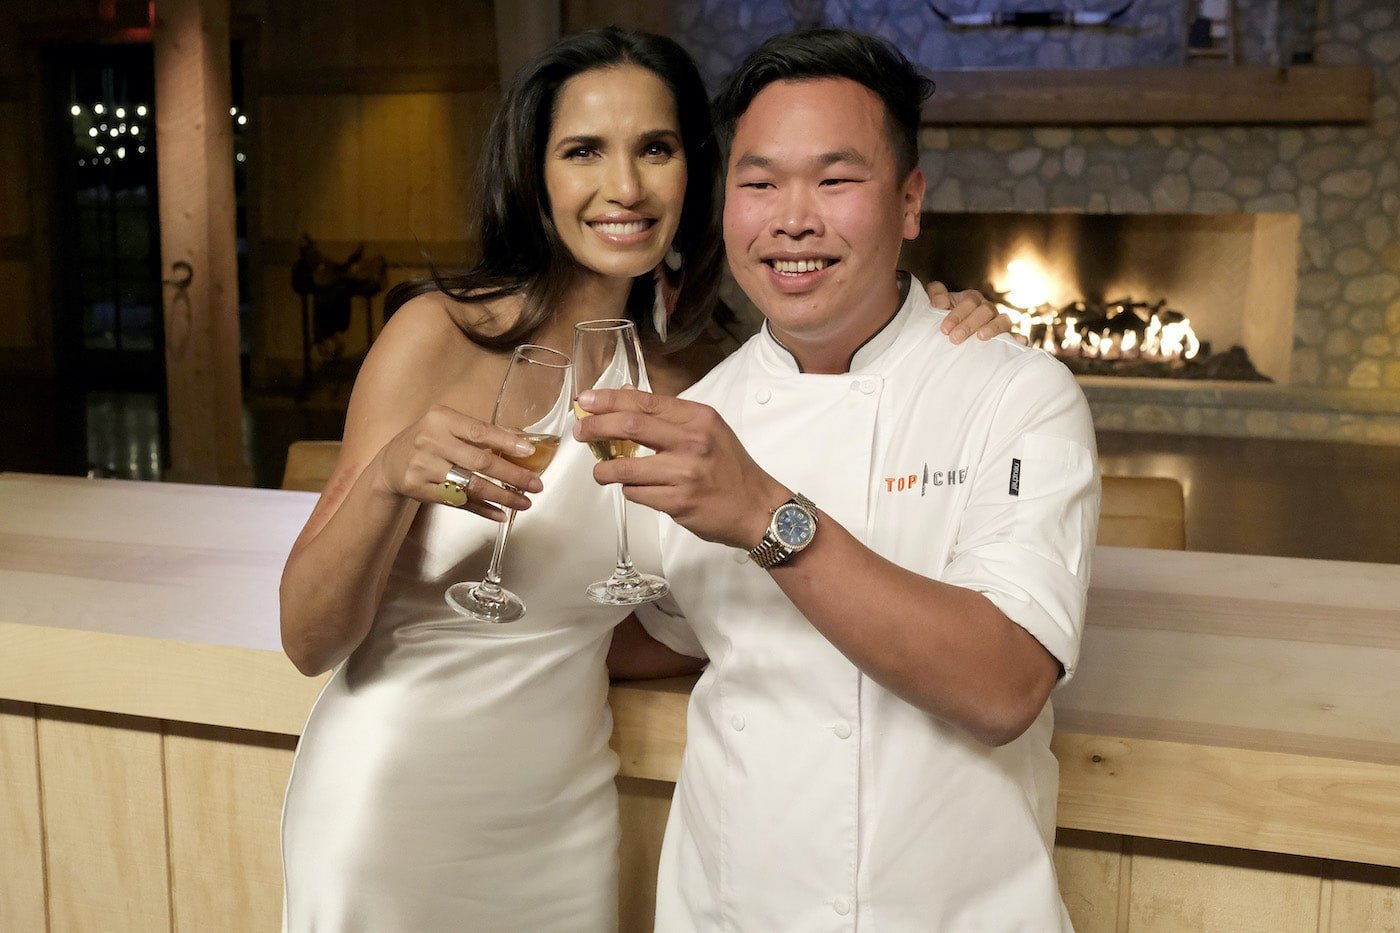 Buddha Lo è l'ultimo vincitore di "Top Chef" per Padma Lakshmi: "Era irreale" [Esclusivo]